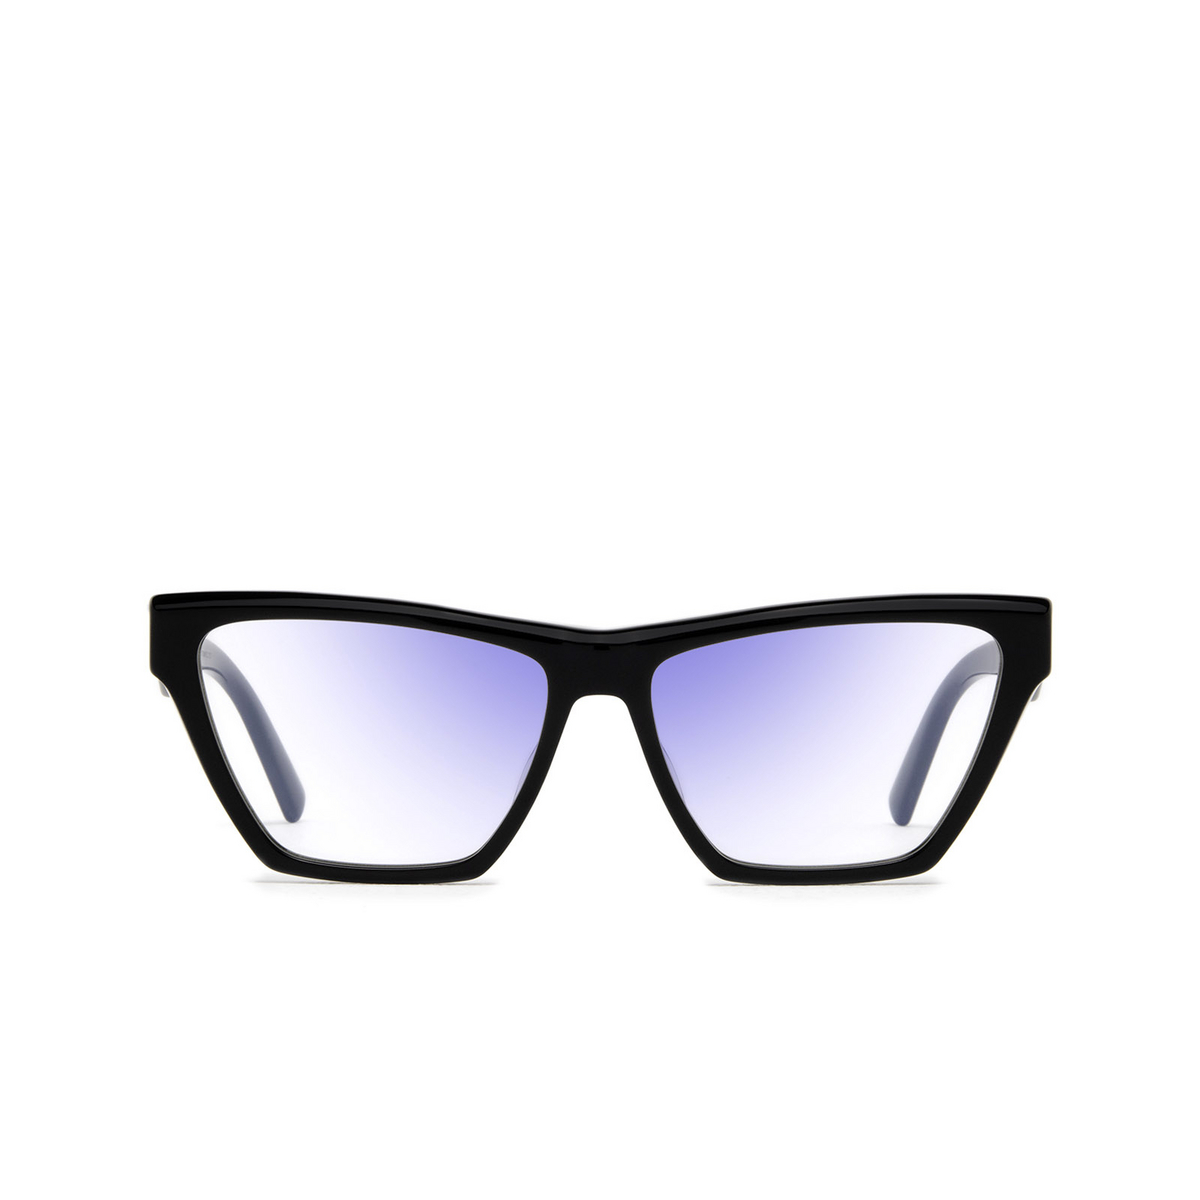 Saint Laurent® Cat-eye Sunglasses: SL M103 color Black 004 - front view.